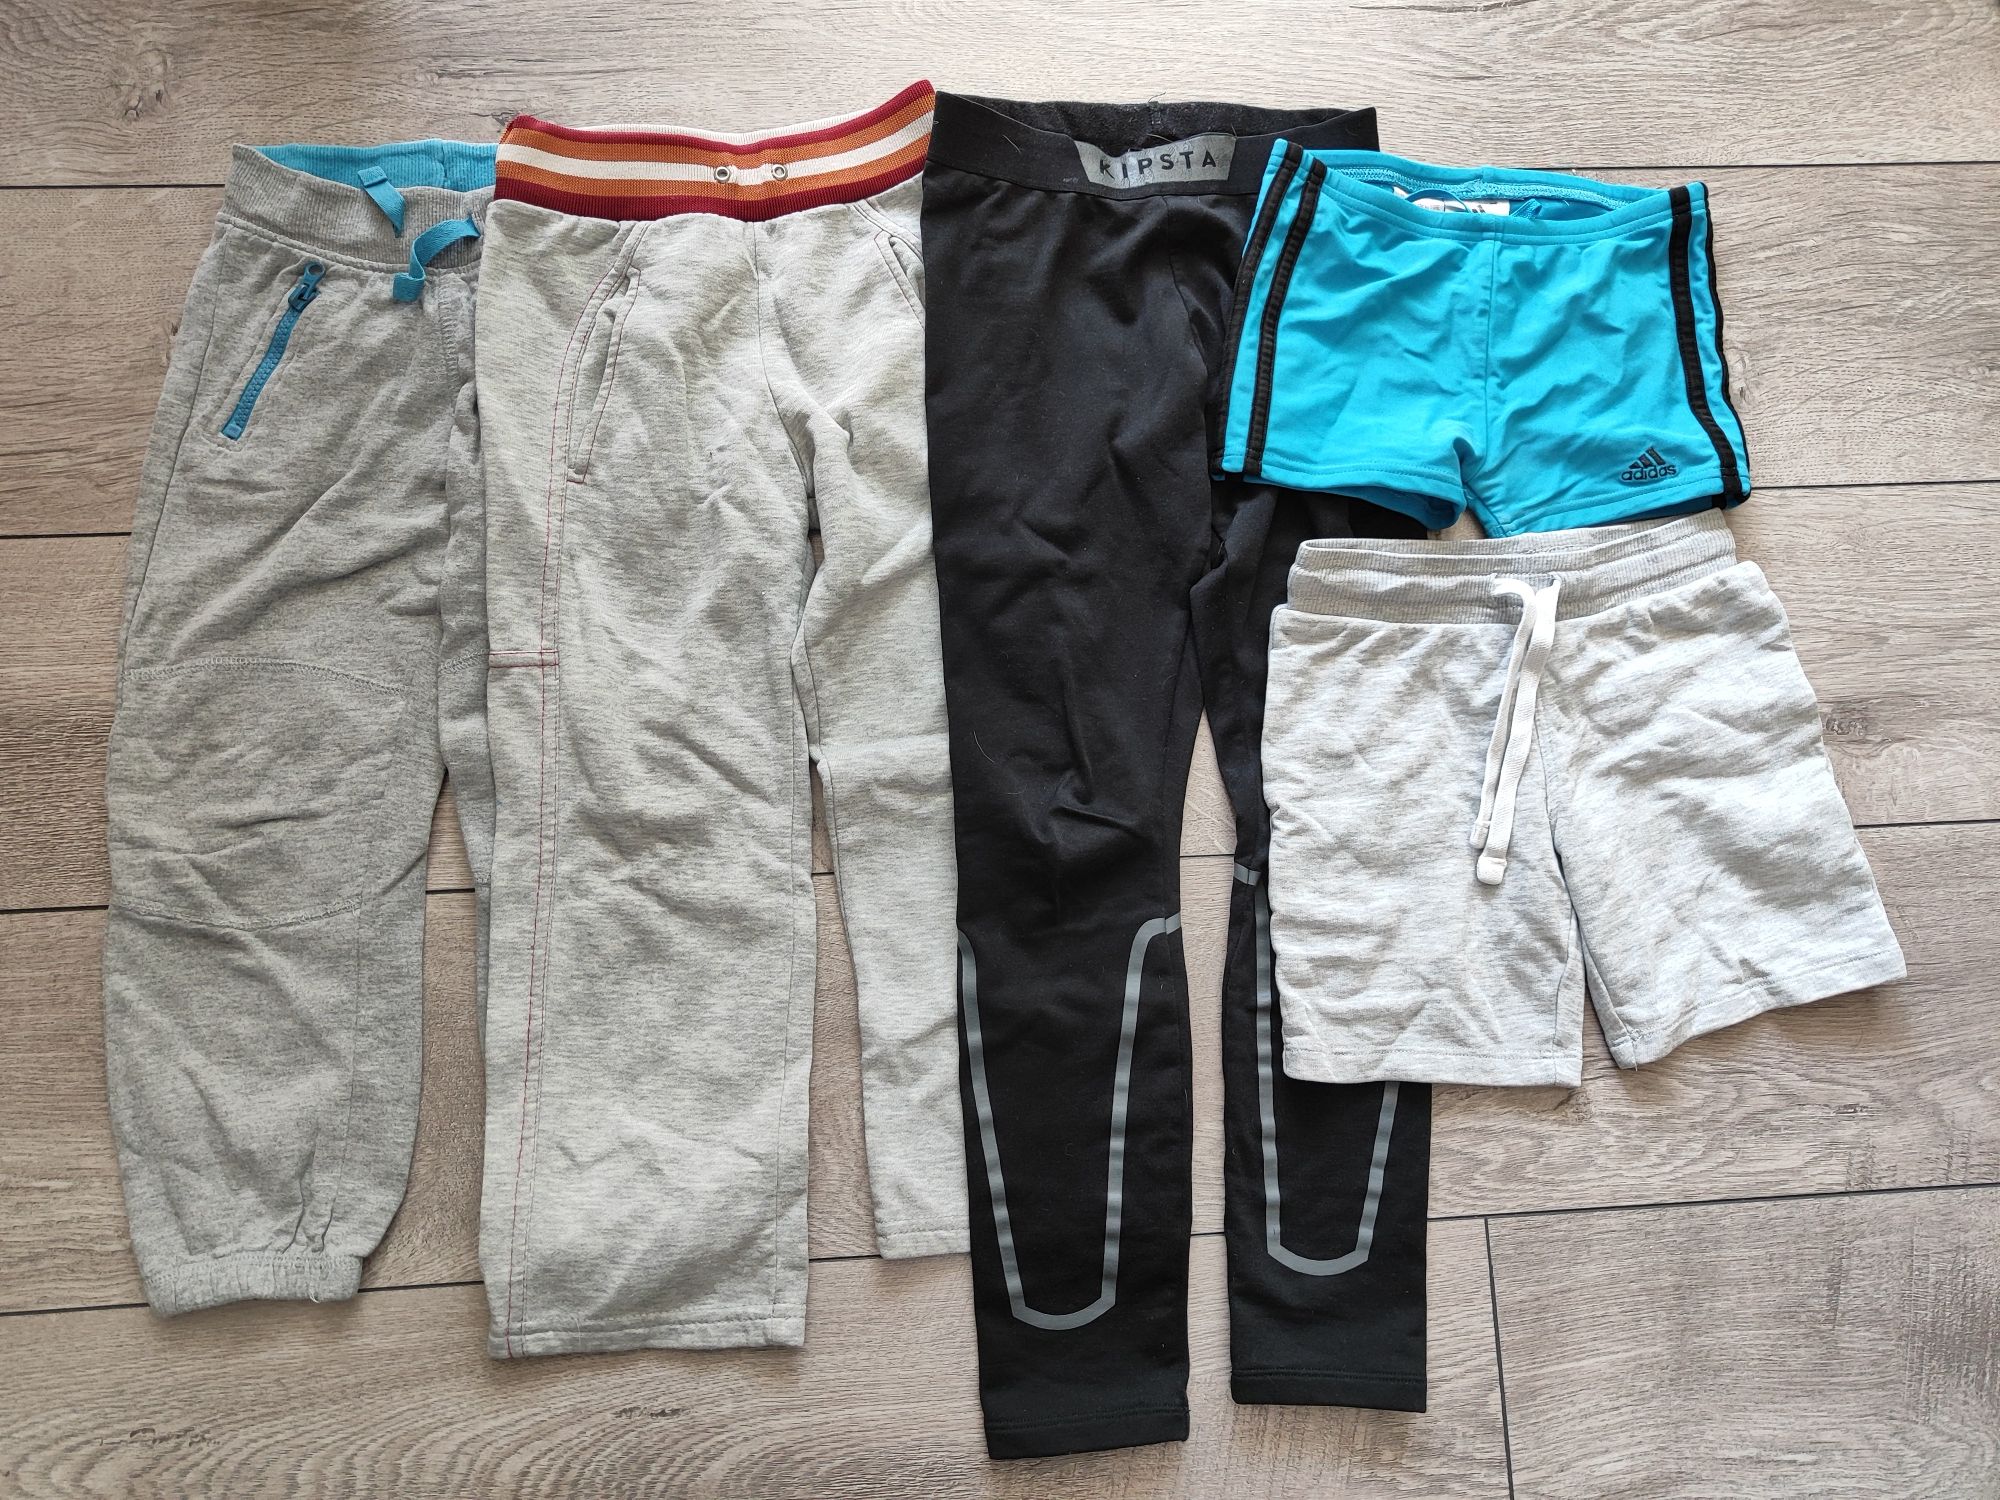 Одежда для мальчика 4-6 лет, 110-128 см, штаны, футболка, майка, регла